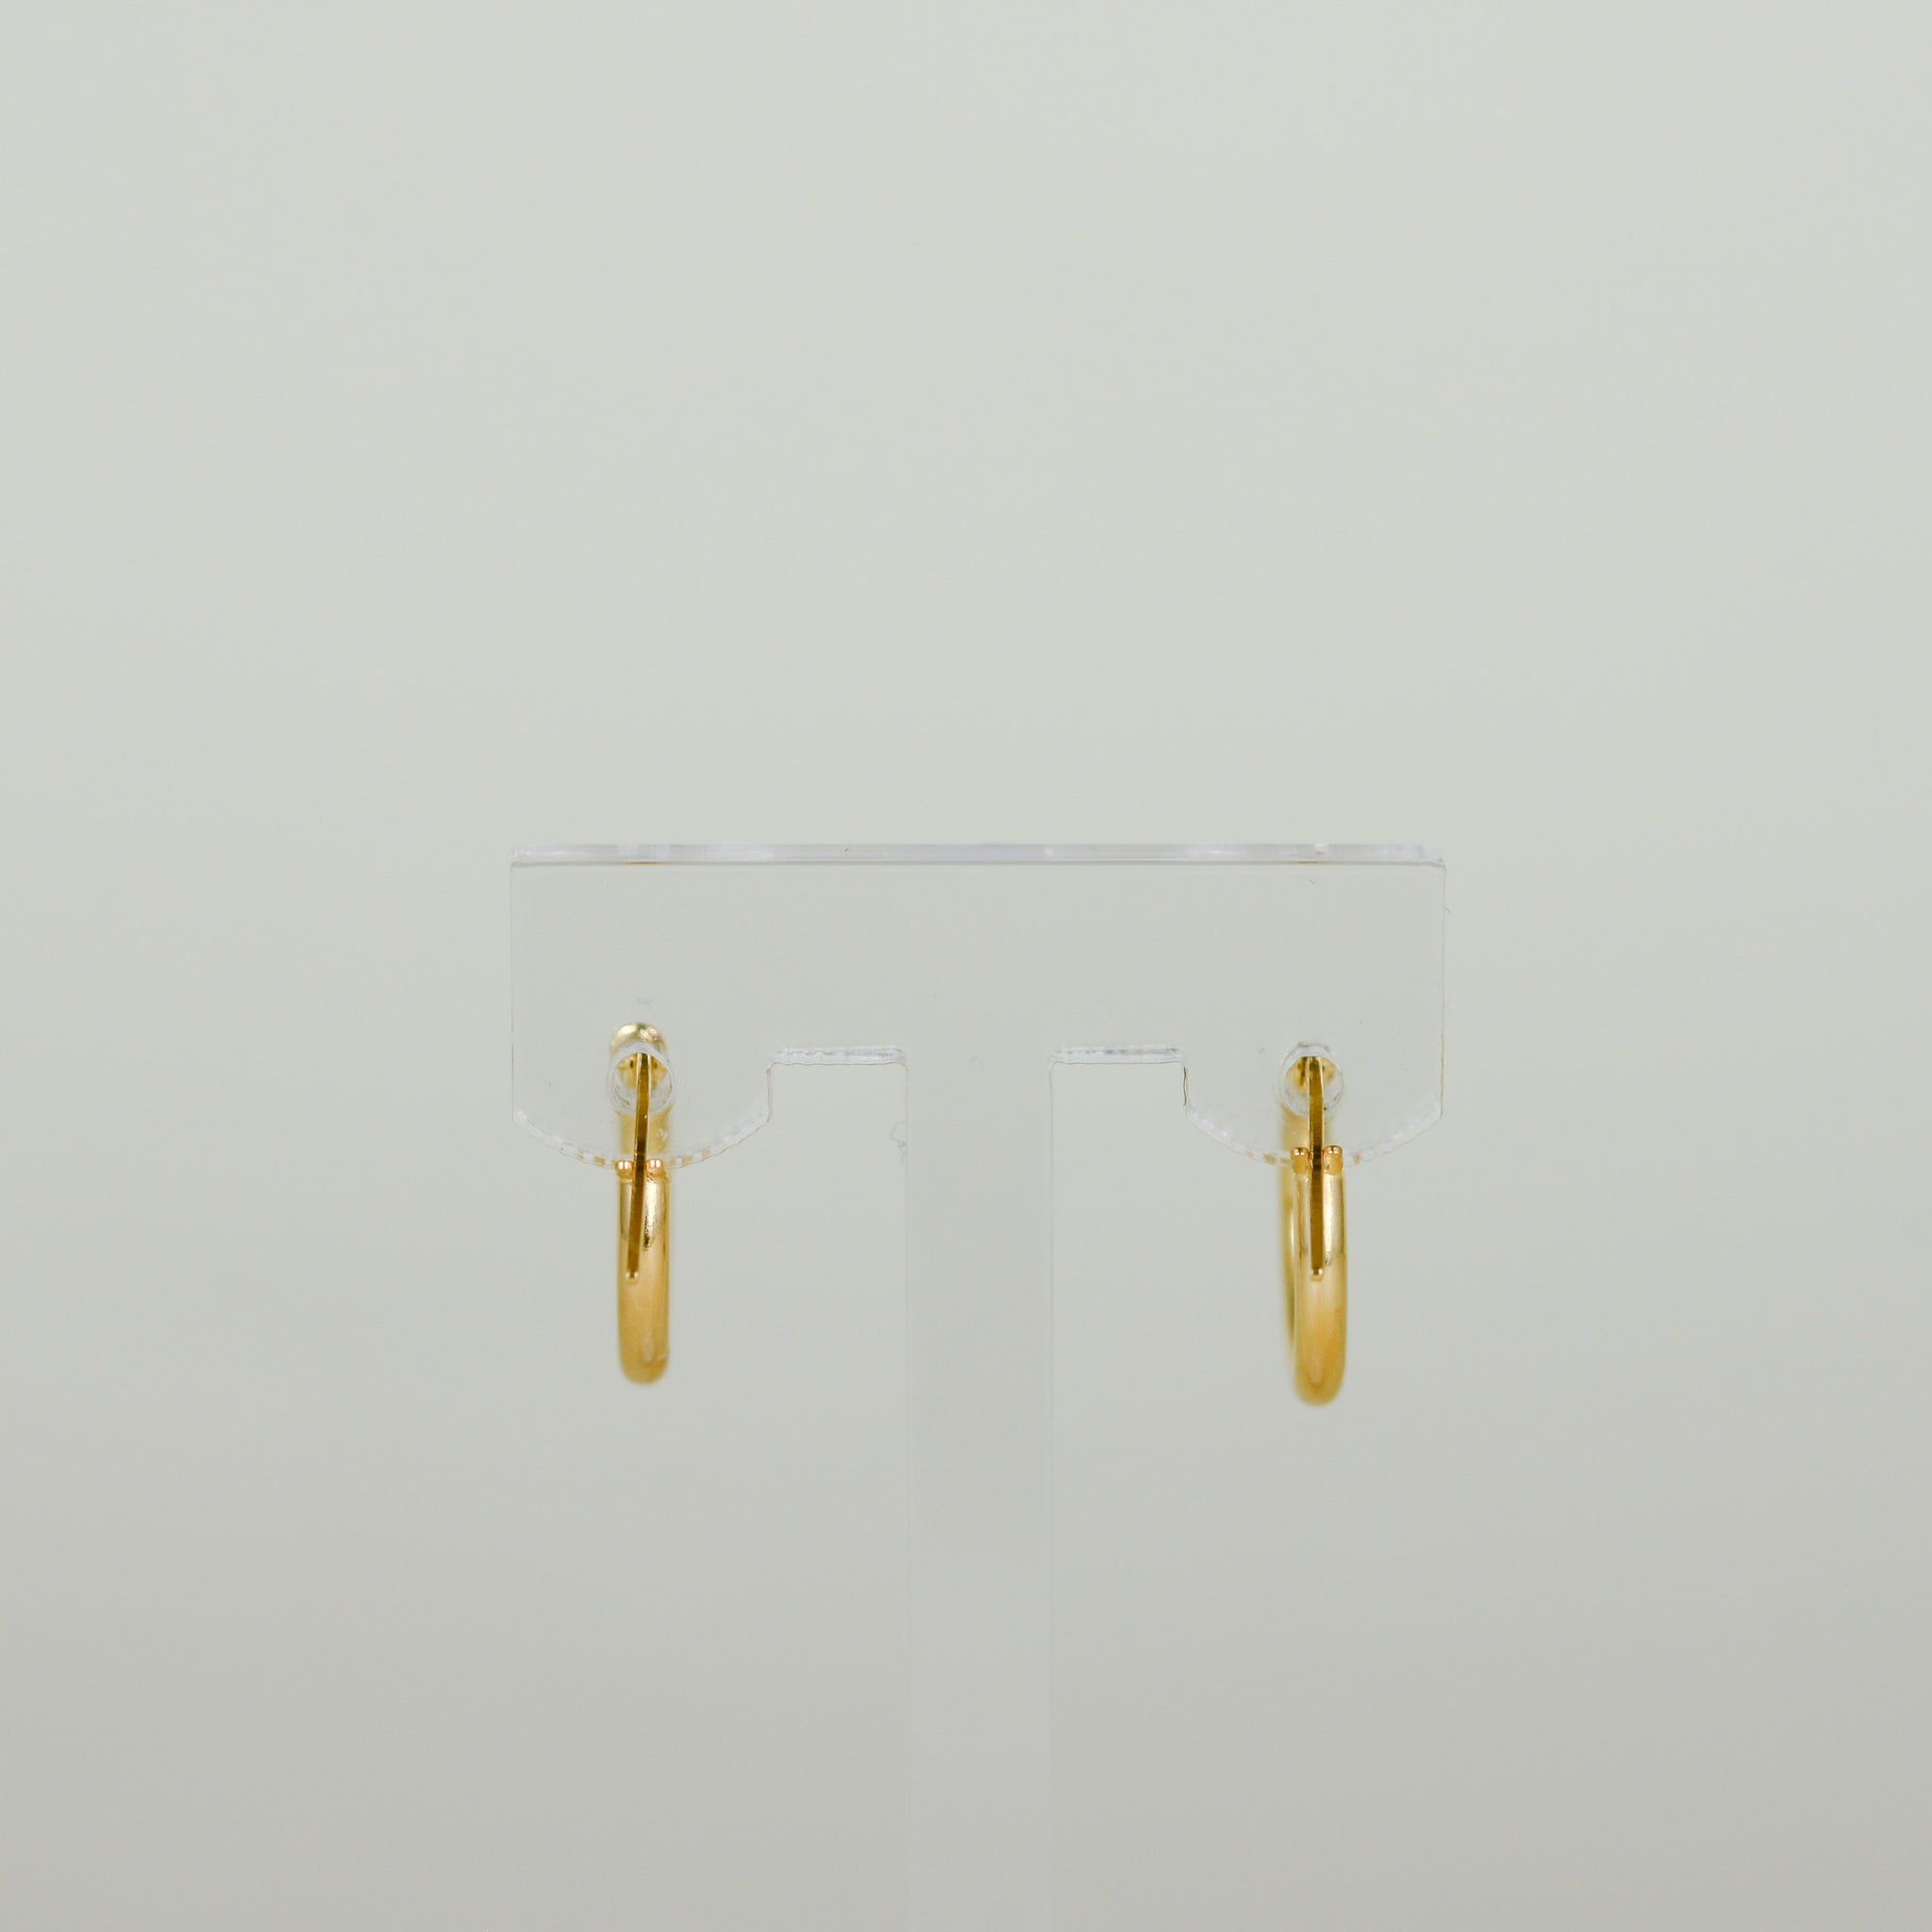 9ct Yellow Gold 15mm Hoop Earrings